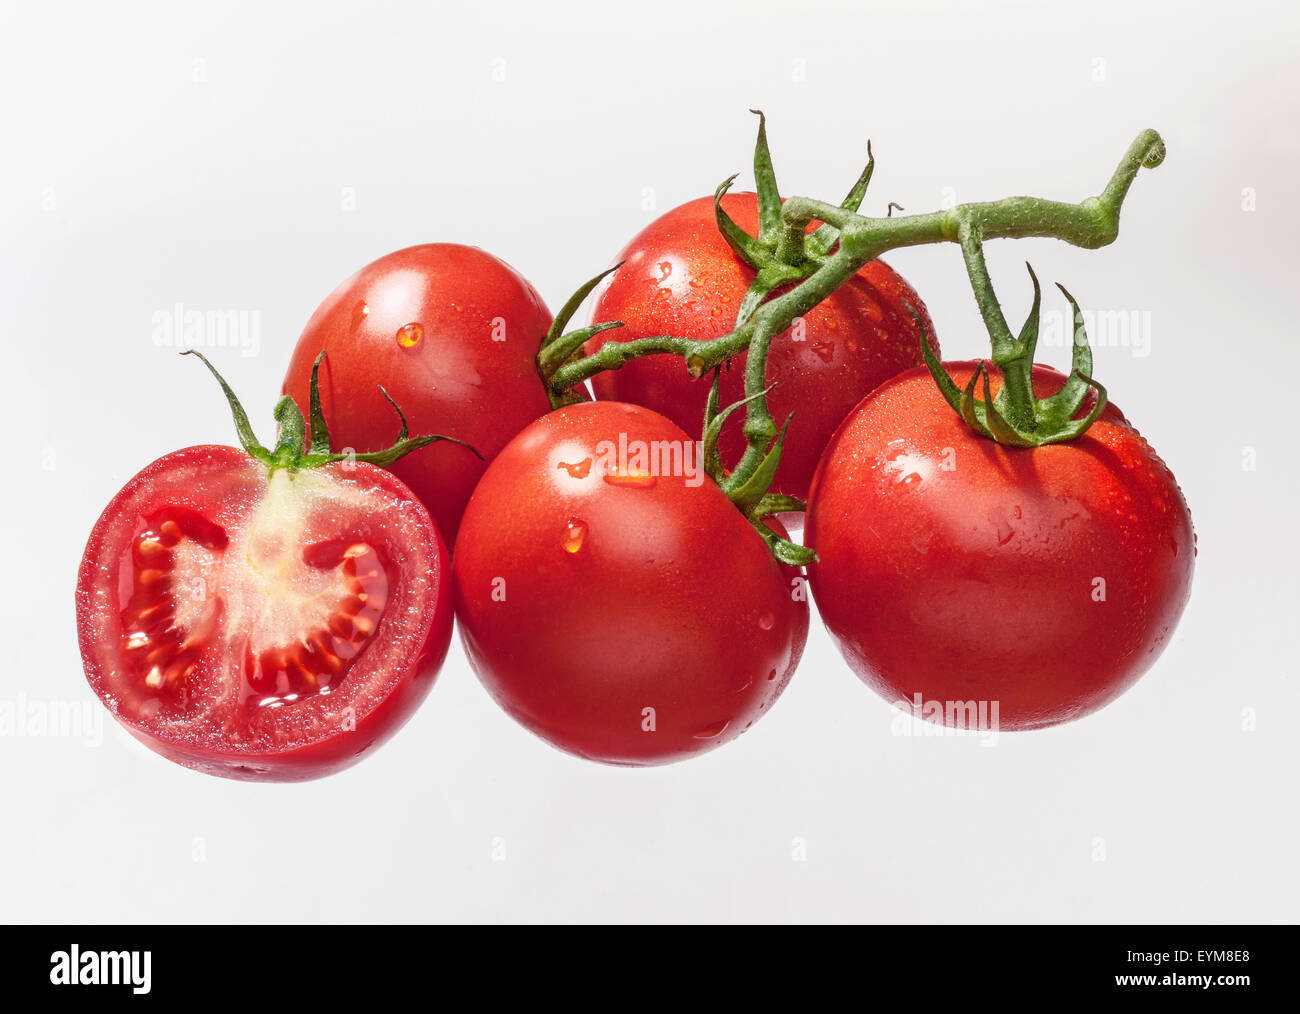 Tomatoes, panicle, cluster, sliced, studio, Solanum licopersicum, solanum Stock Photo